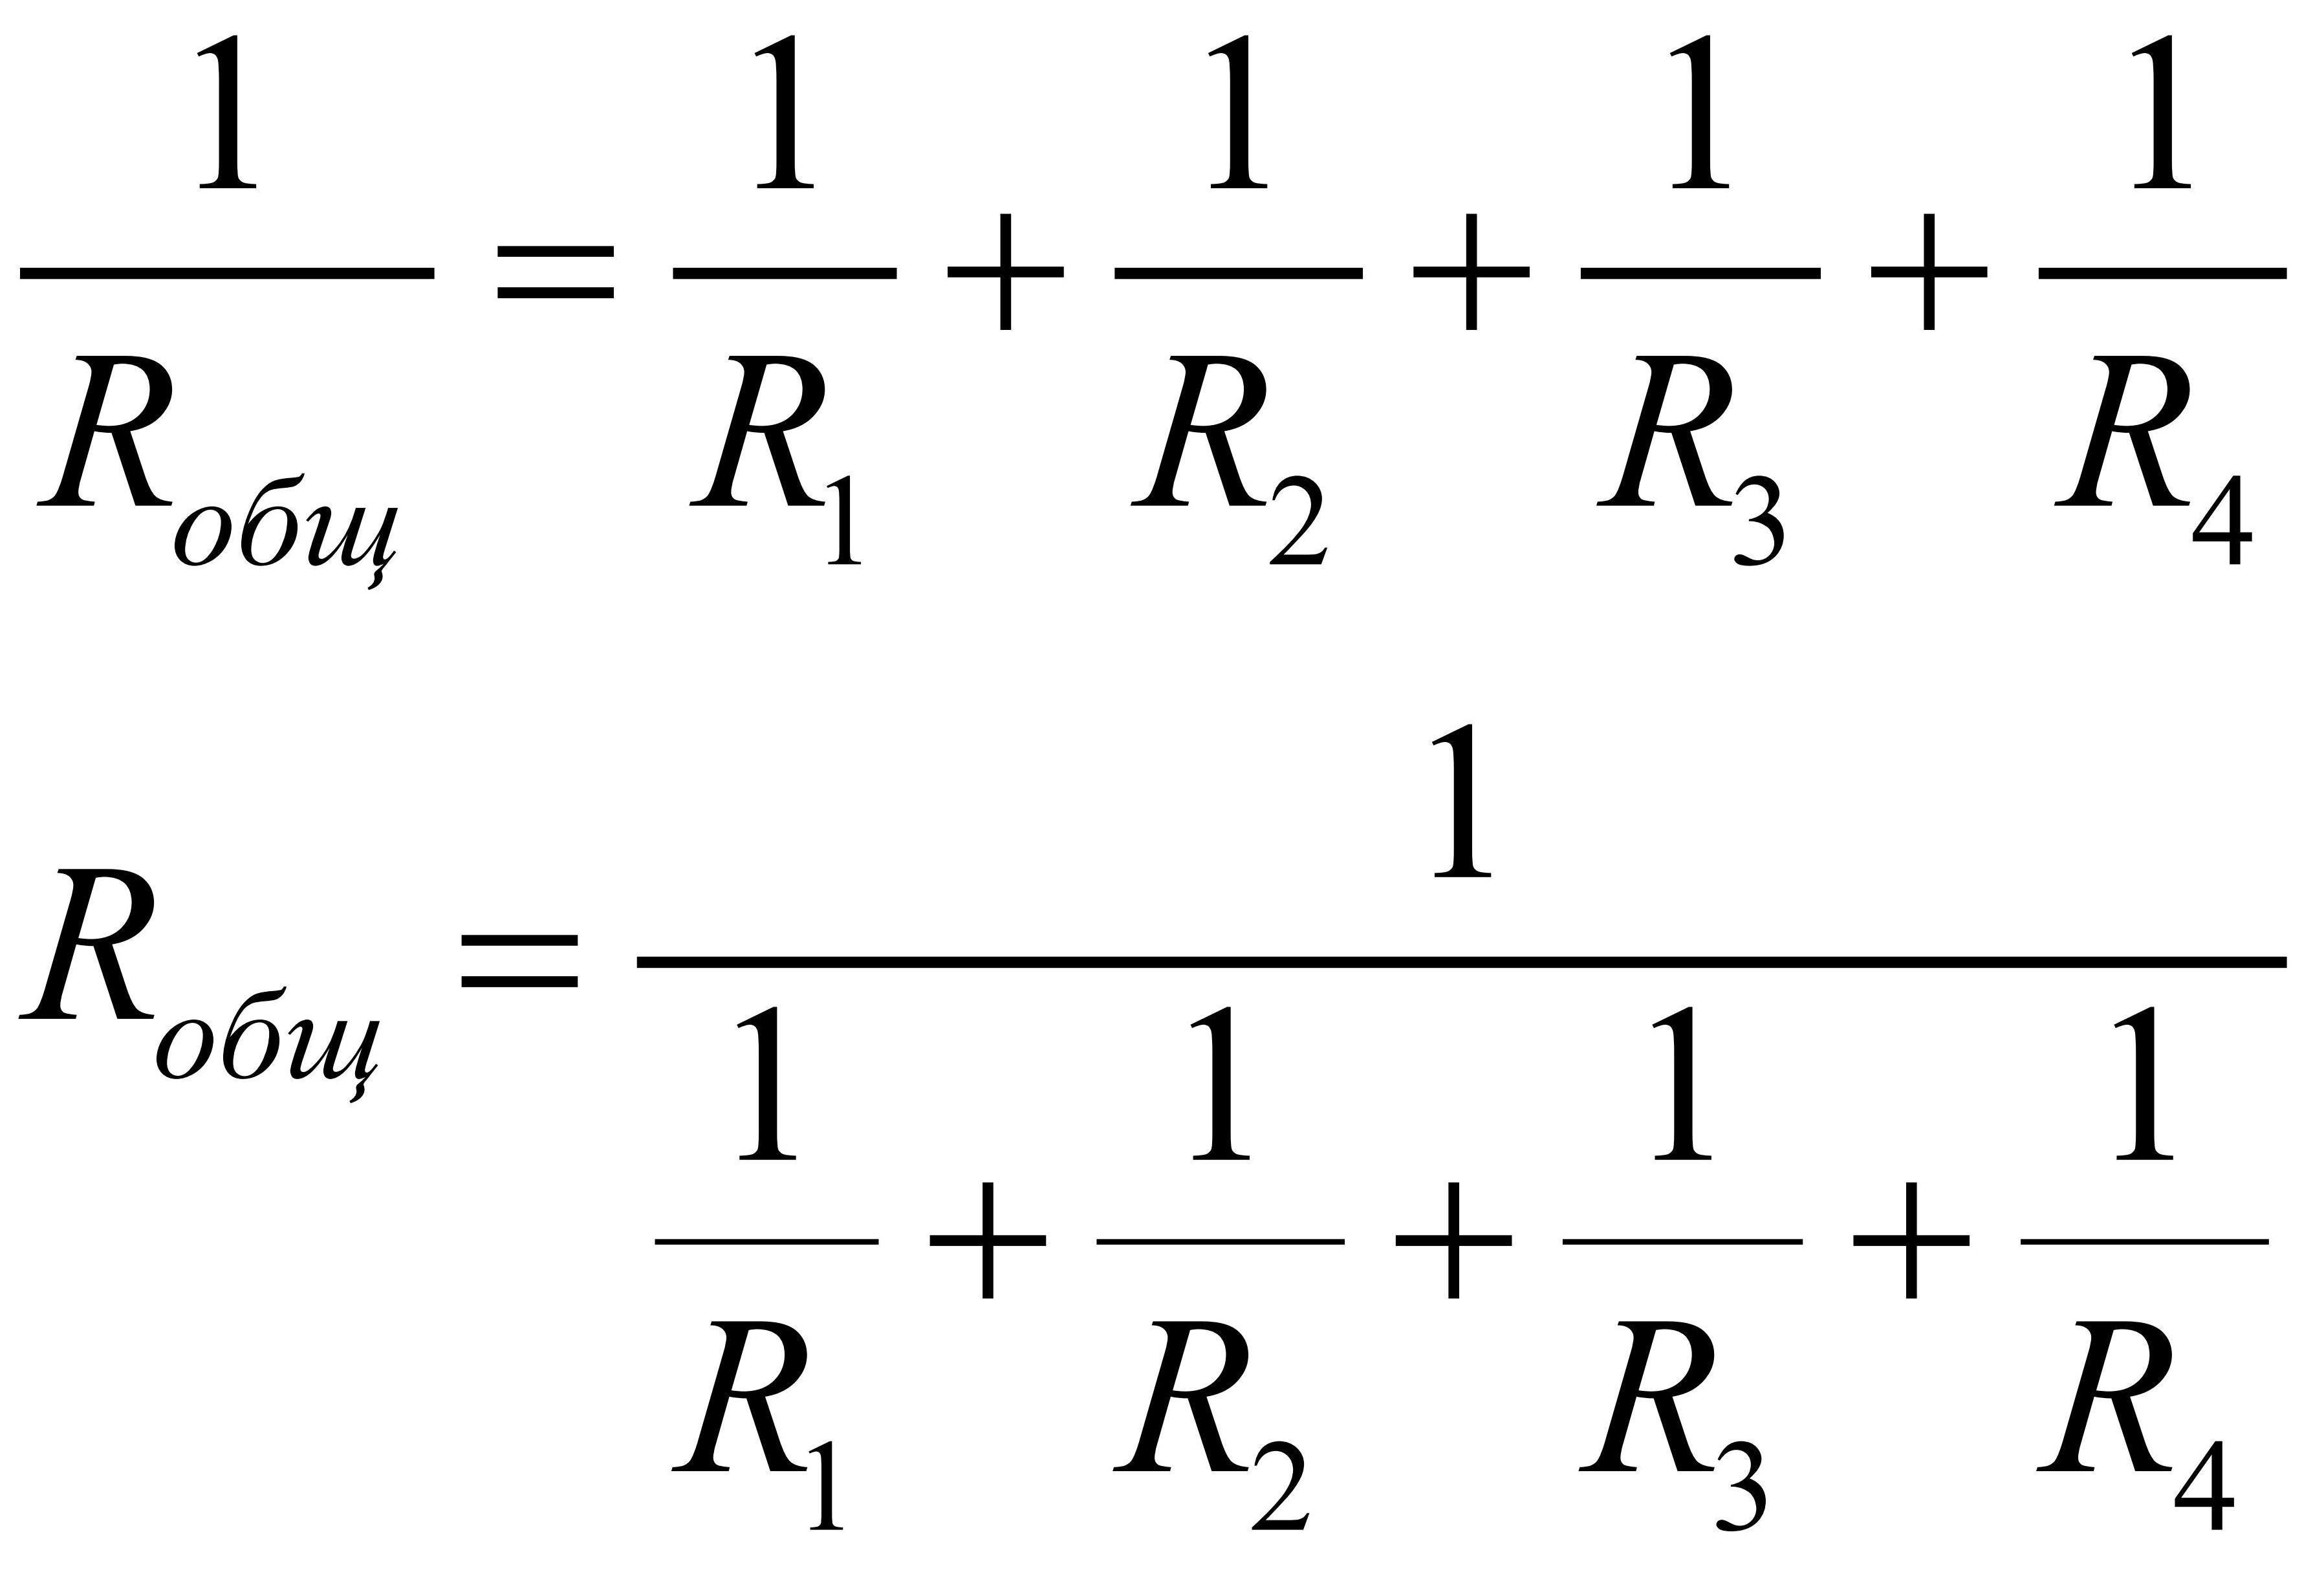 Параллельное соединение резисторов формула сопротивления